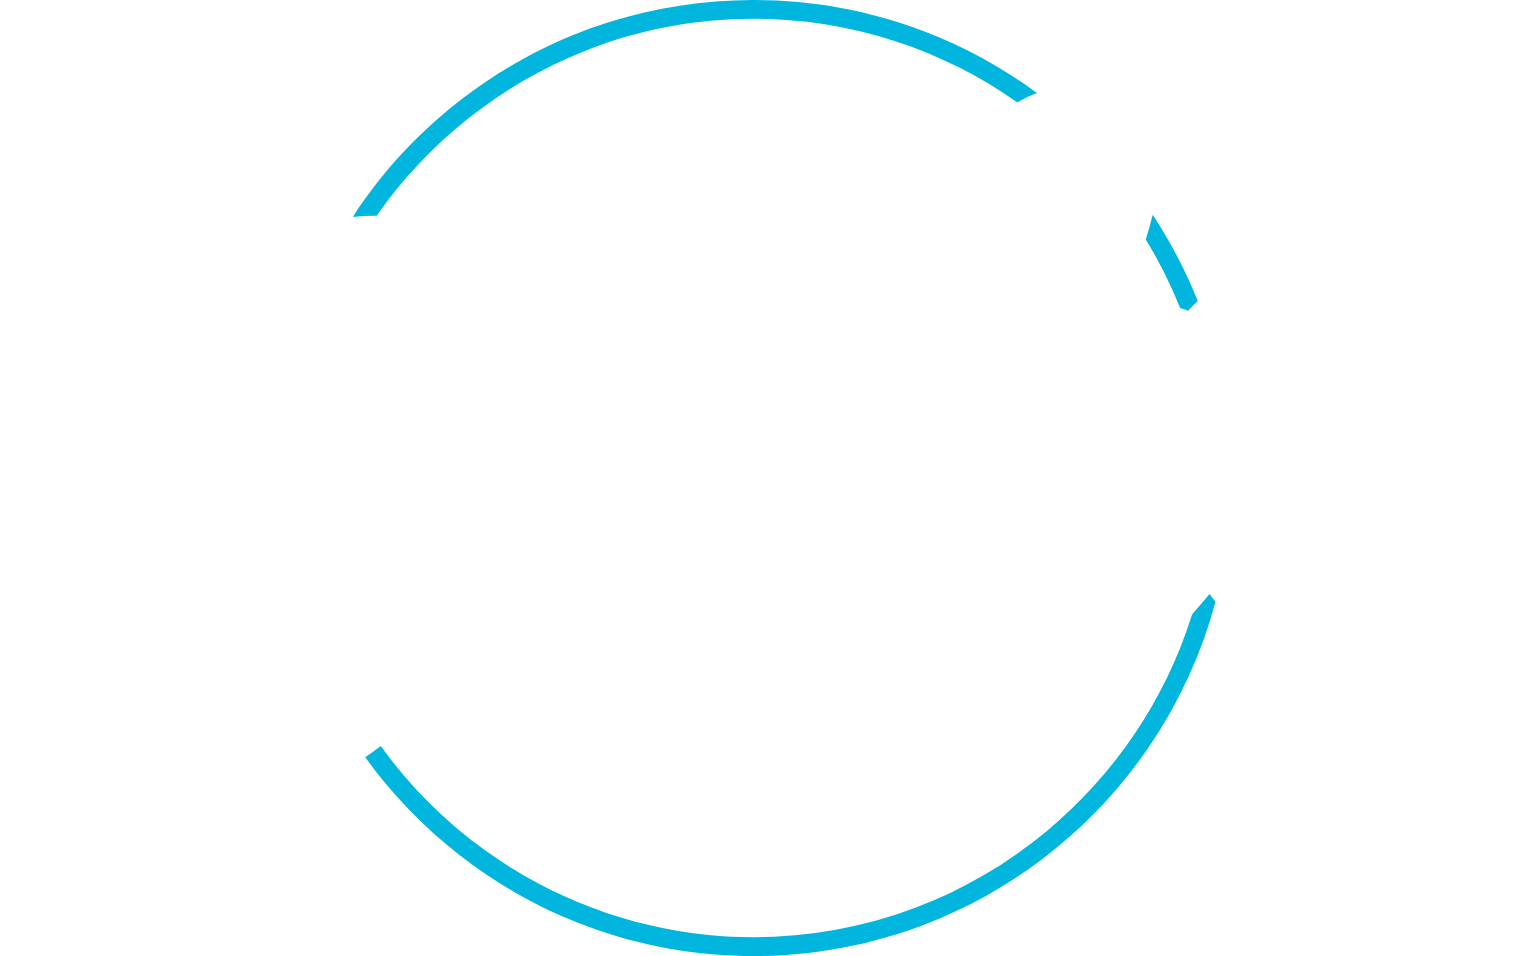 Bowlero logo pour fonds sombres (PNG transparent)